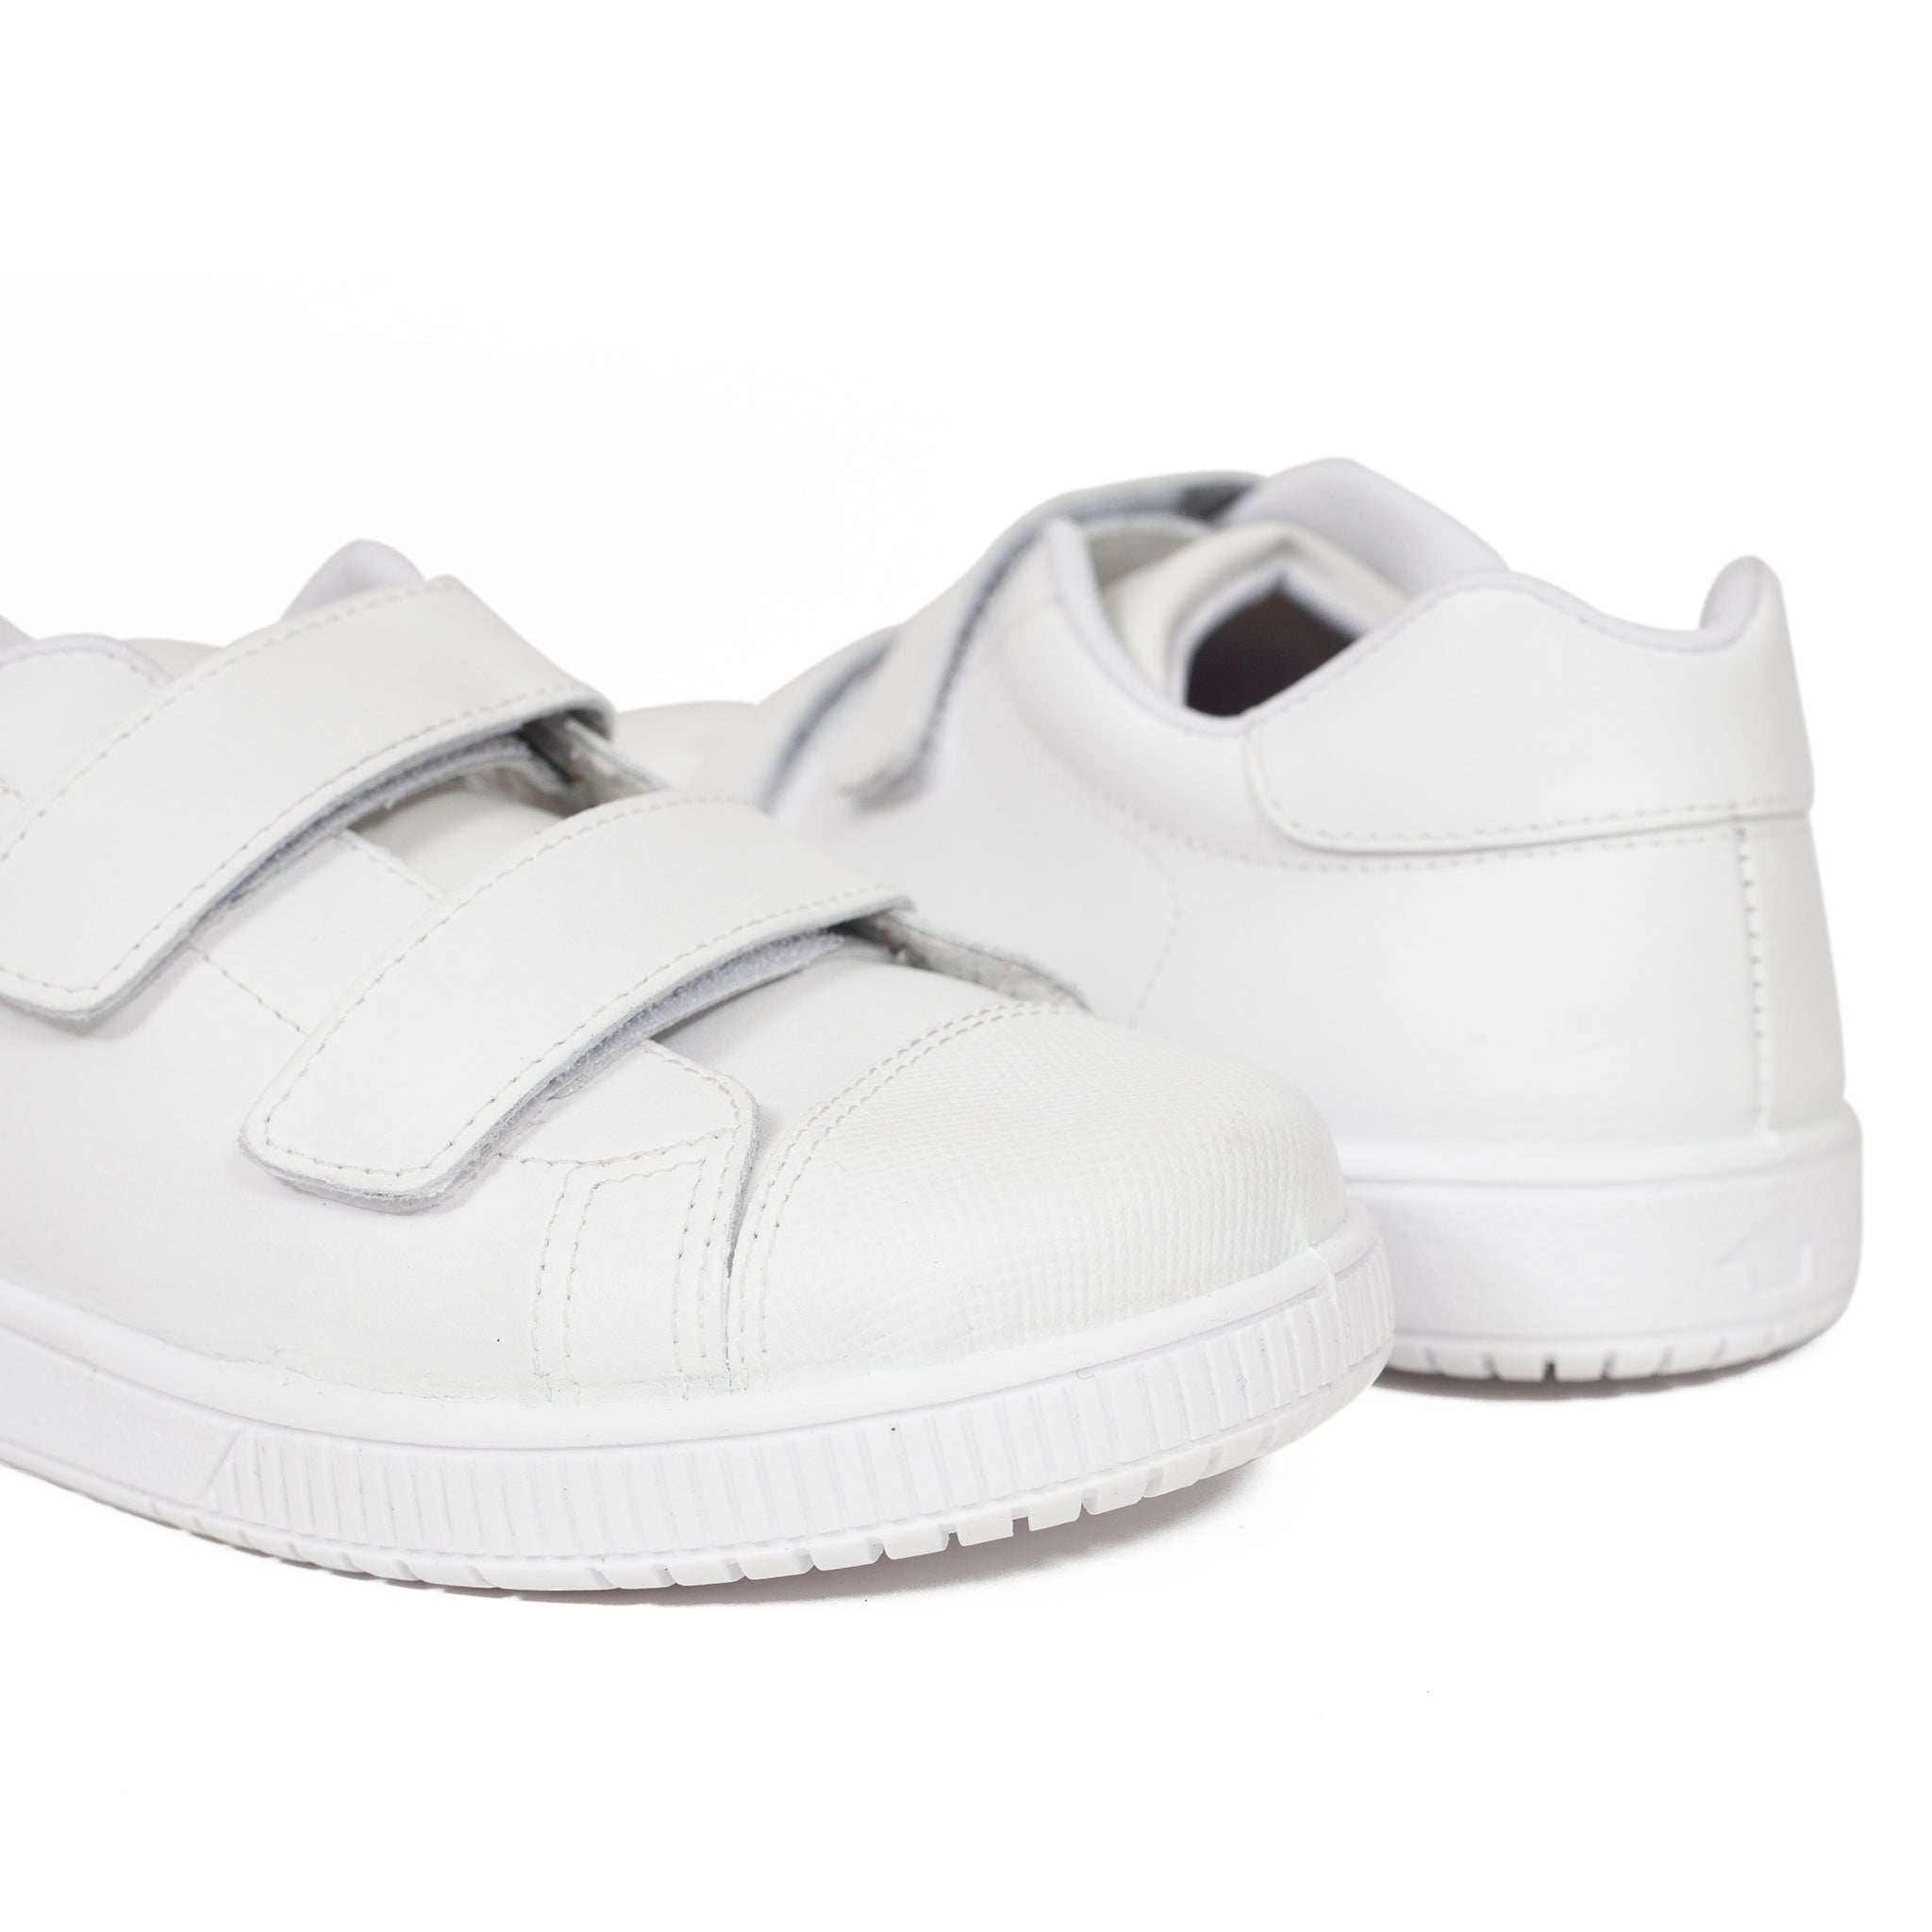 Zapatos niña y niño online hechos en España de marca – miMaO ShopOnline